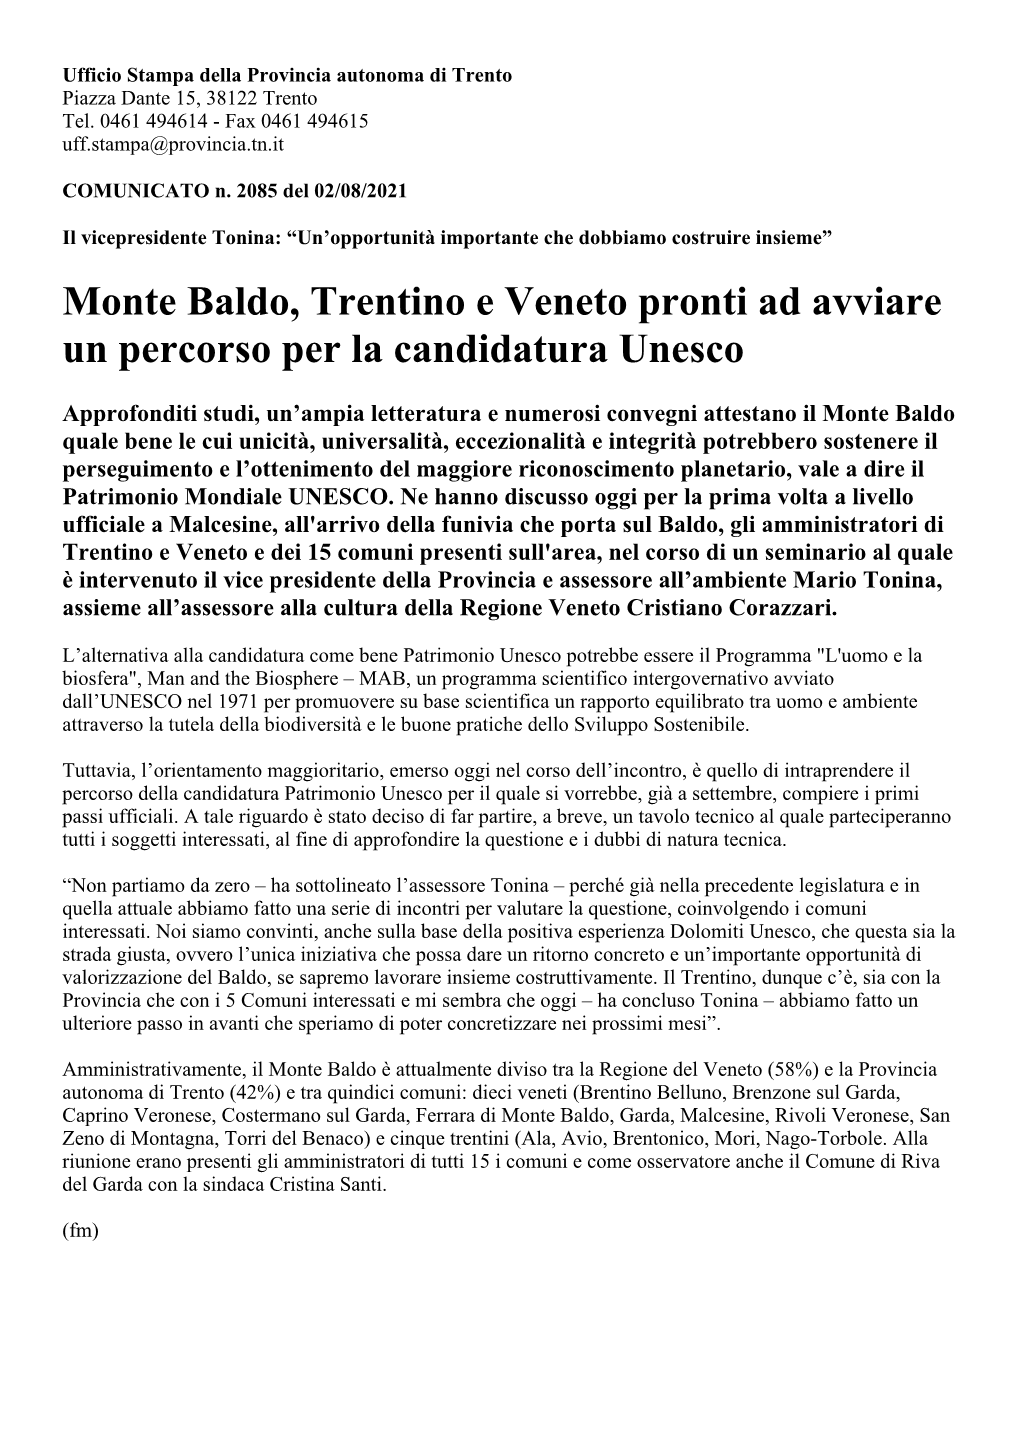 Monte Baldo, Trentino E Veneto Pronti Ad Avviare Un Percorso Per La Candidatura Unesco